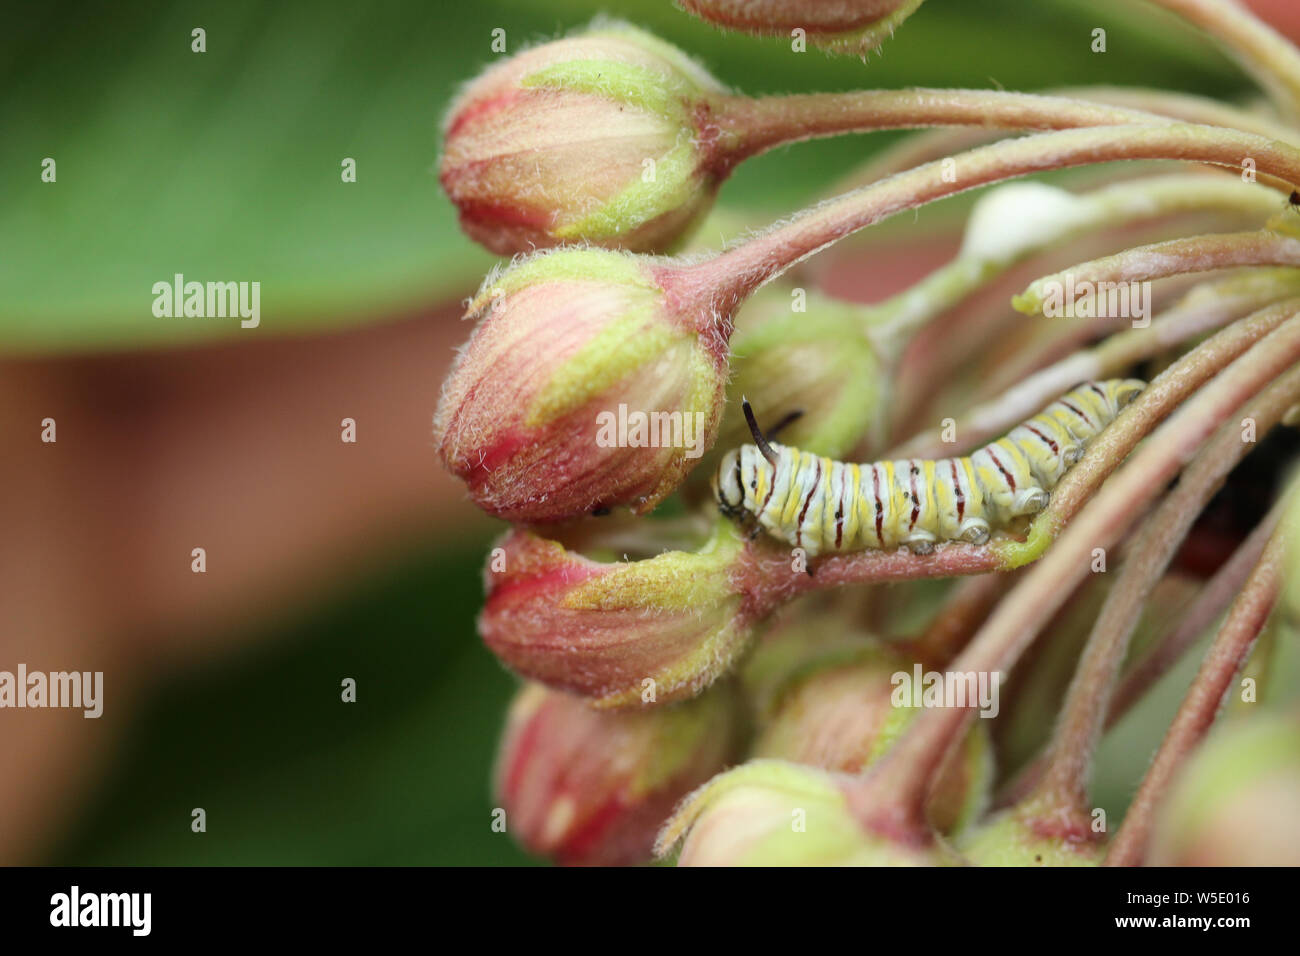 Una fame instar seconda farfalla monarca caterpillar mangiare alcuni comuni milkweed germoglio di fiore. Foto Stock